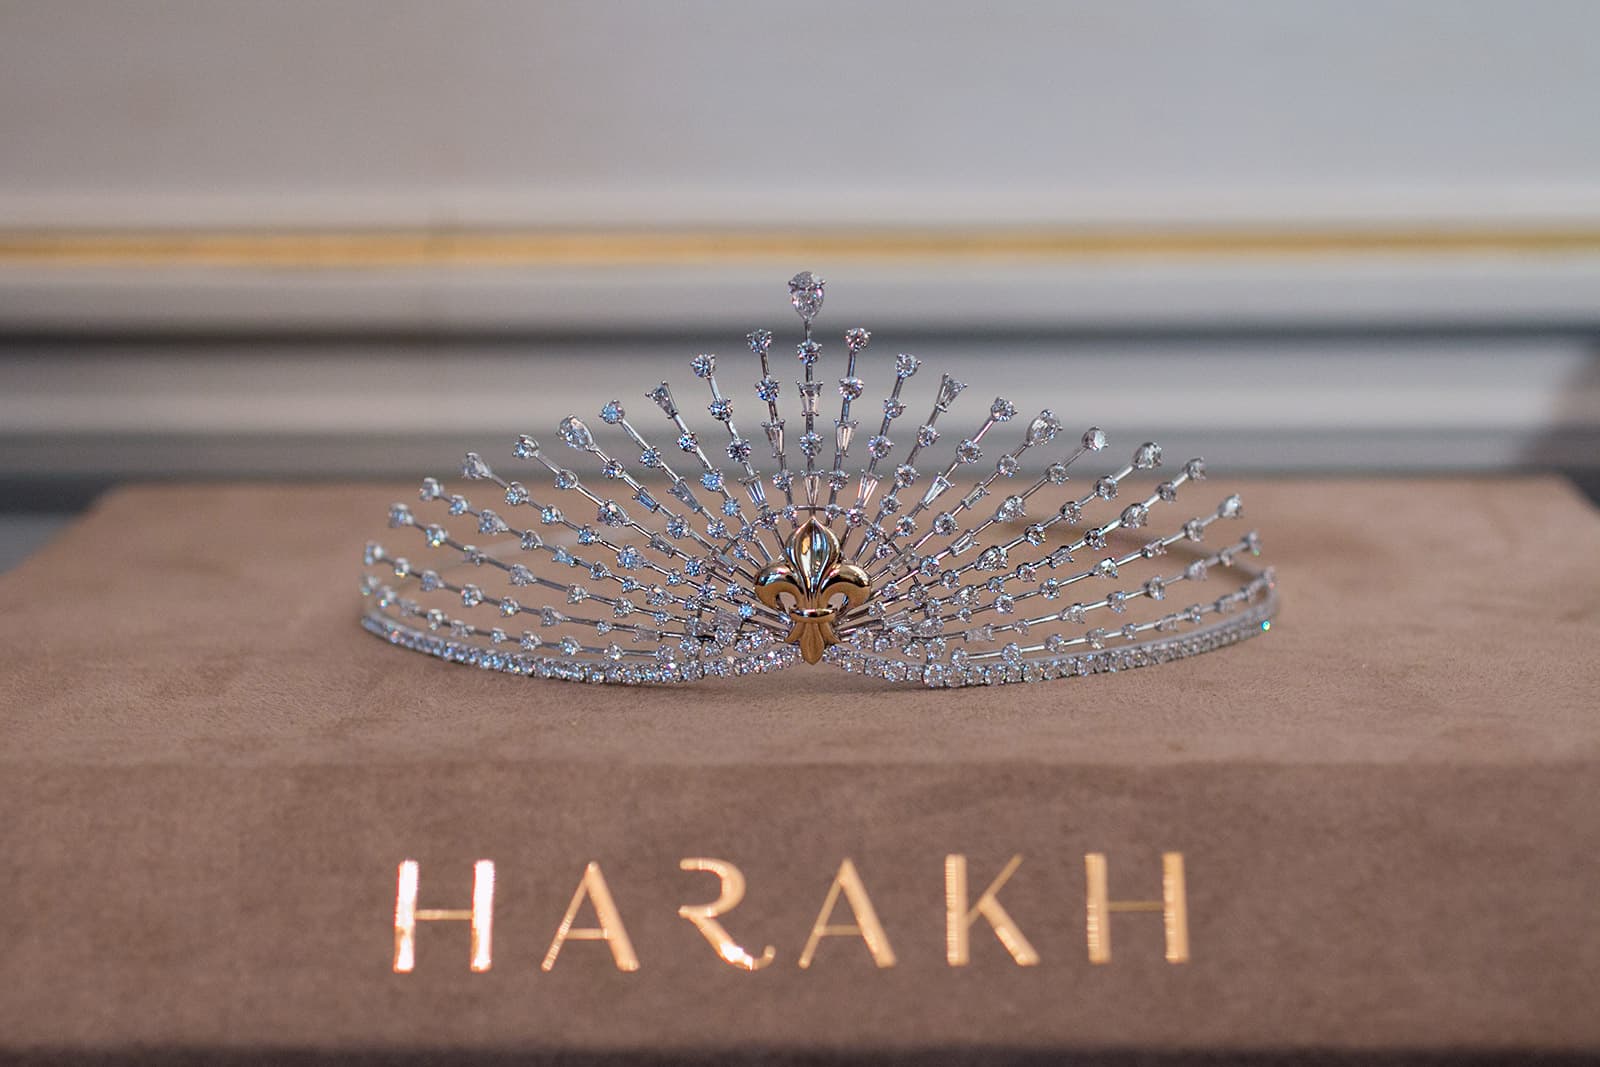 Создавая исключительные изделия с бриллиантами высшего качества, HARAKH разрушает стереотип о том, что высокое ювелирное искусство не может производиться в Индии